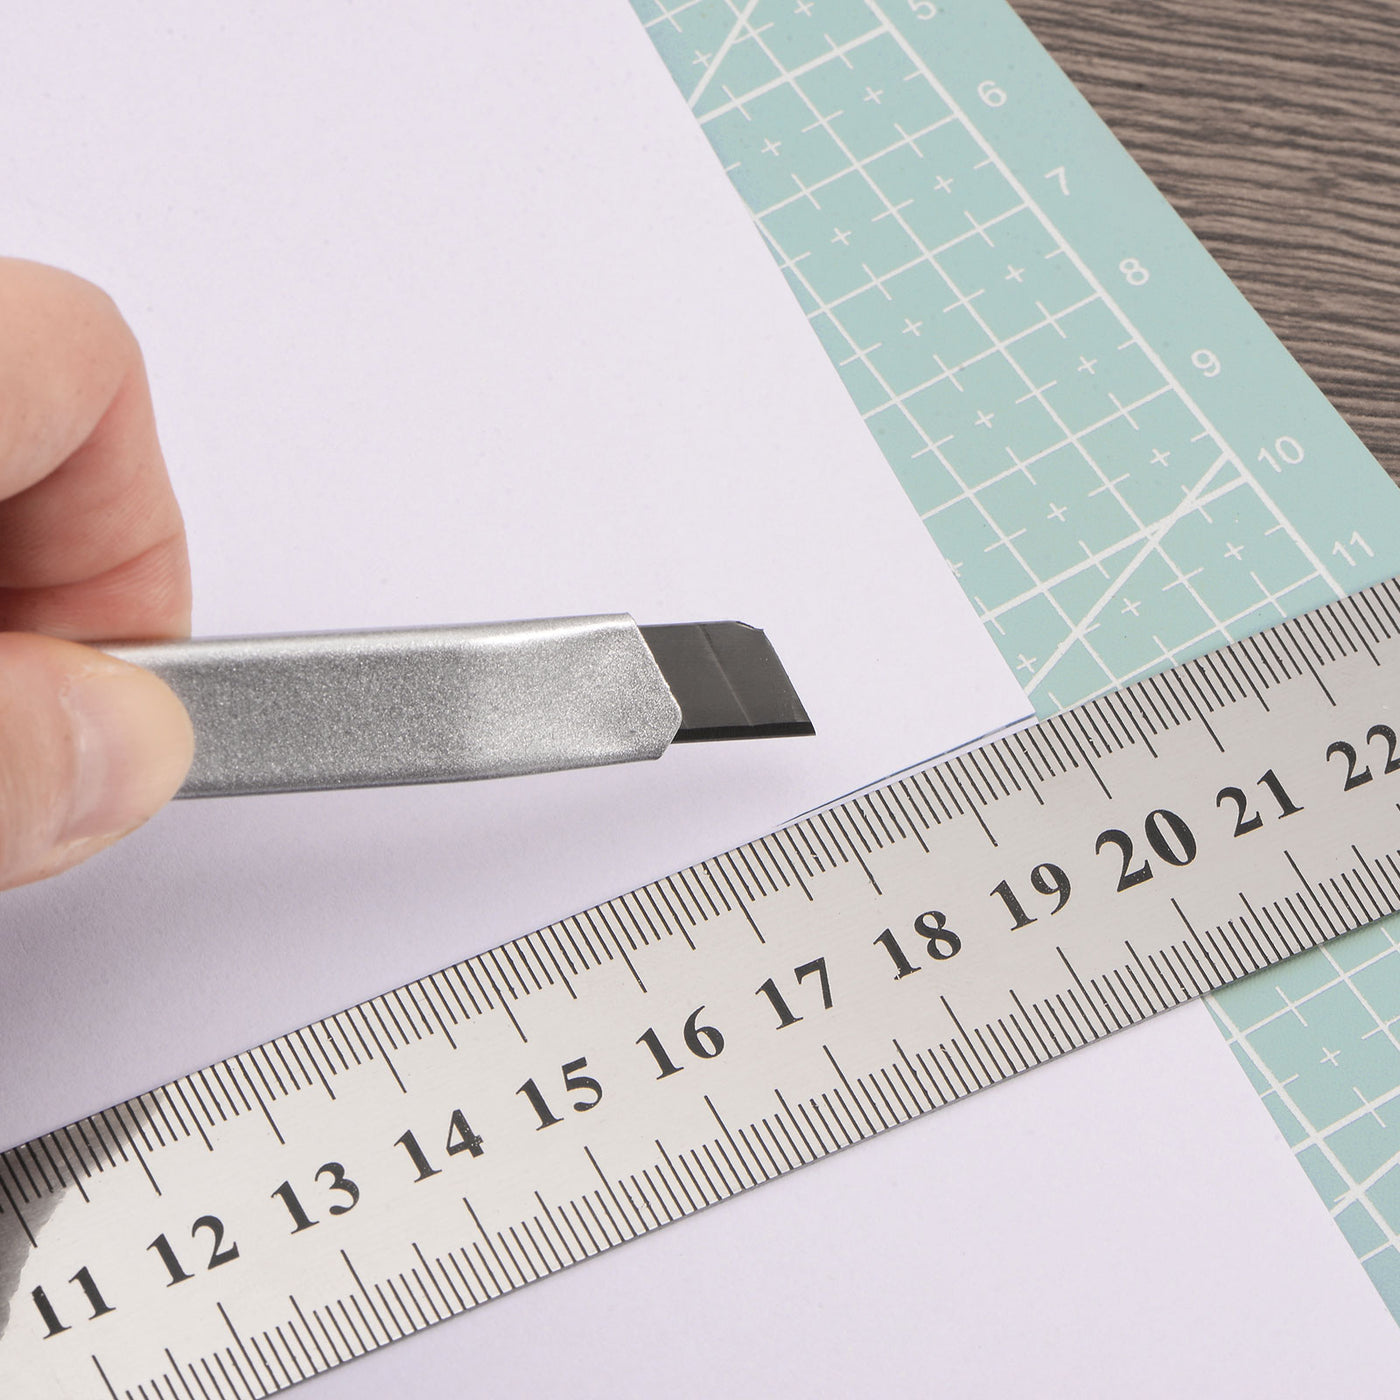 Harfington Cutting Mat & Metal Ruler Set A4 Green Mat 20CM 0.7mm Thick Ruler